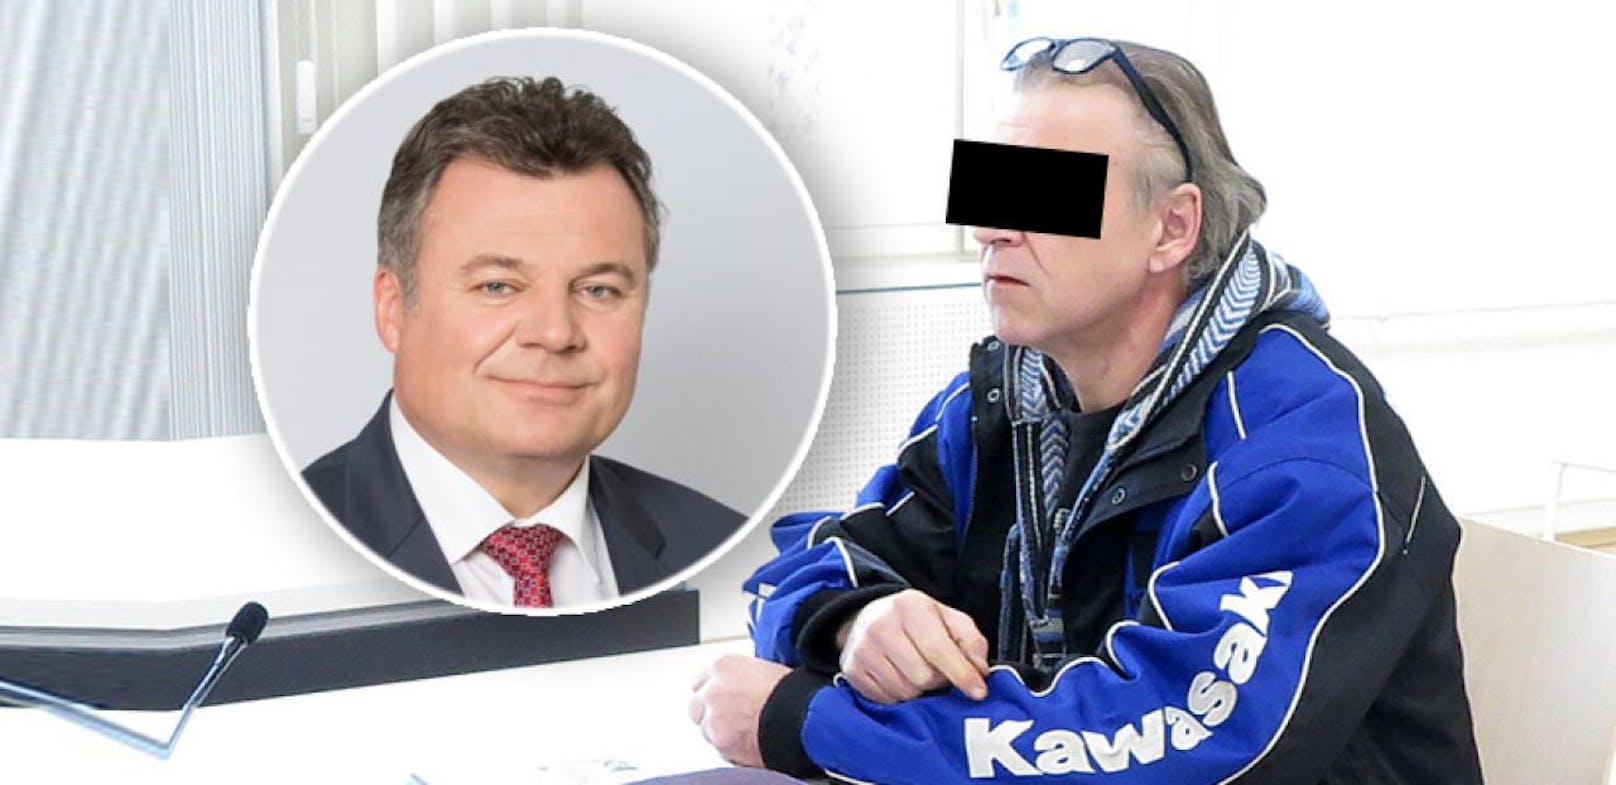 Der Beschuldigte soll unter einem Posting von Landesrat Günther Steinkellner gegen Asylwerber gehetzt haben. 